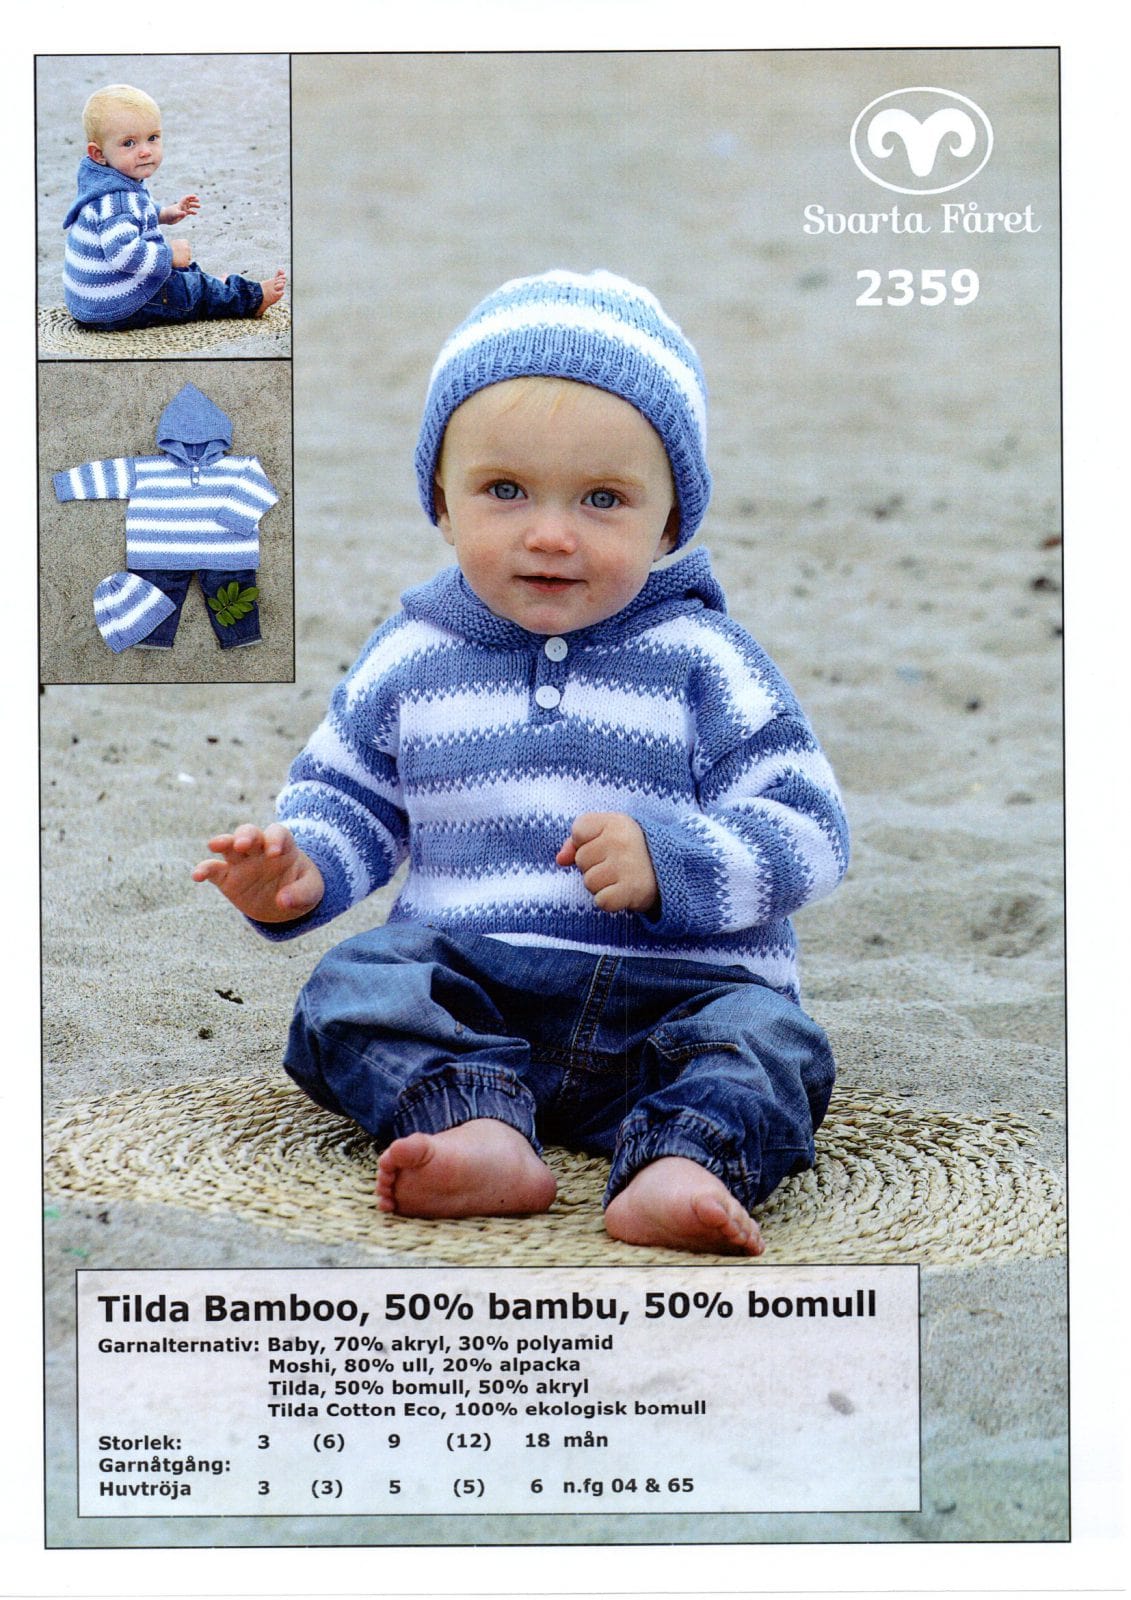 Fåret Garn Tilda Bamboo Babytröja med och mössa – 2359 - Garntorget